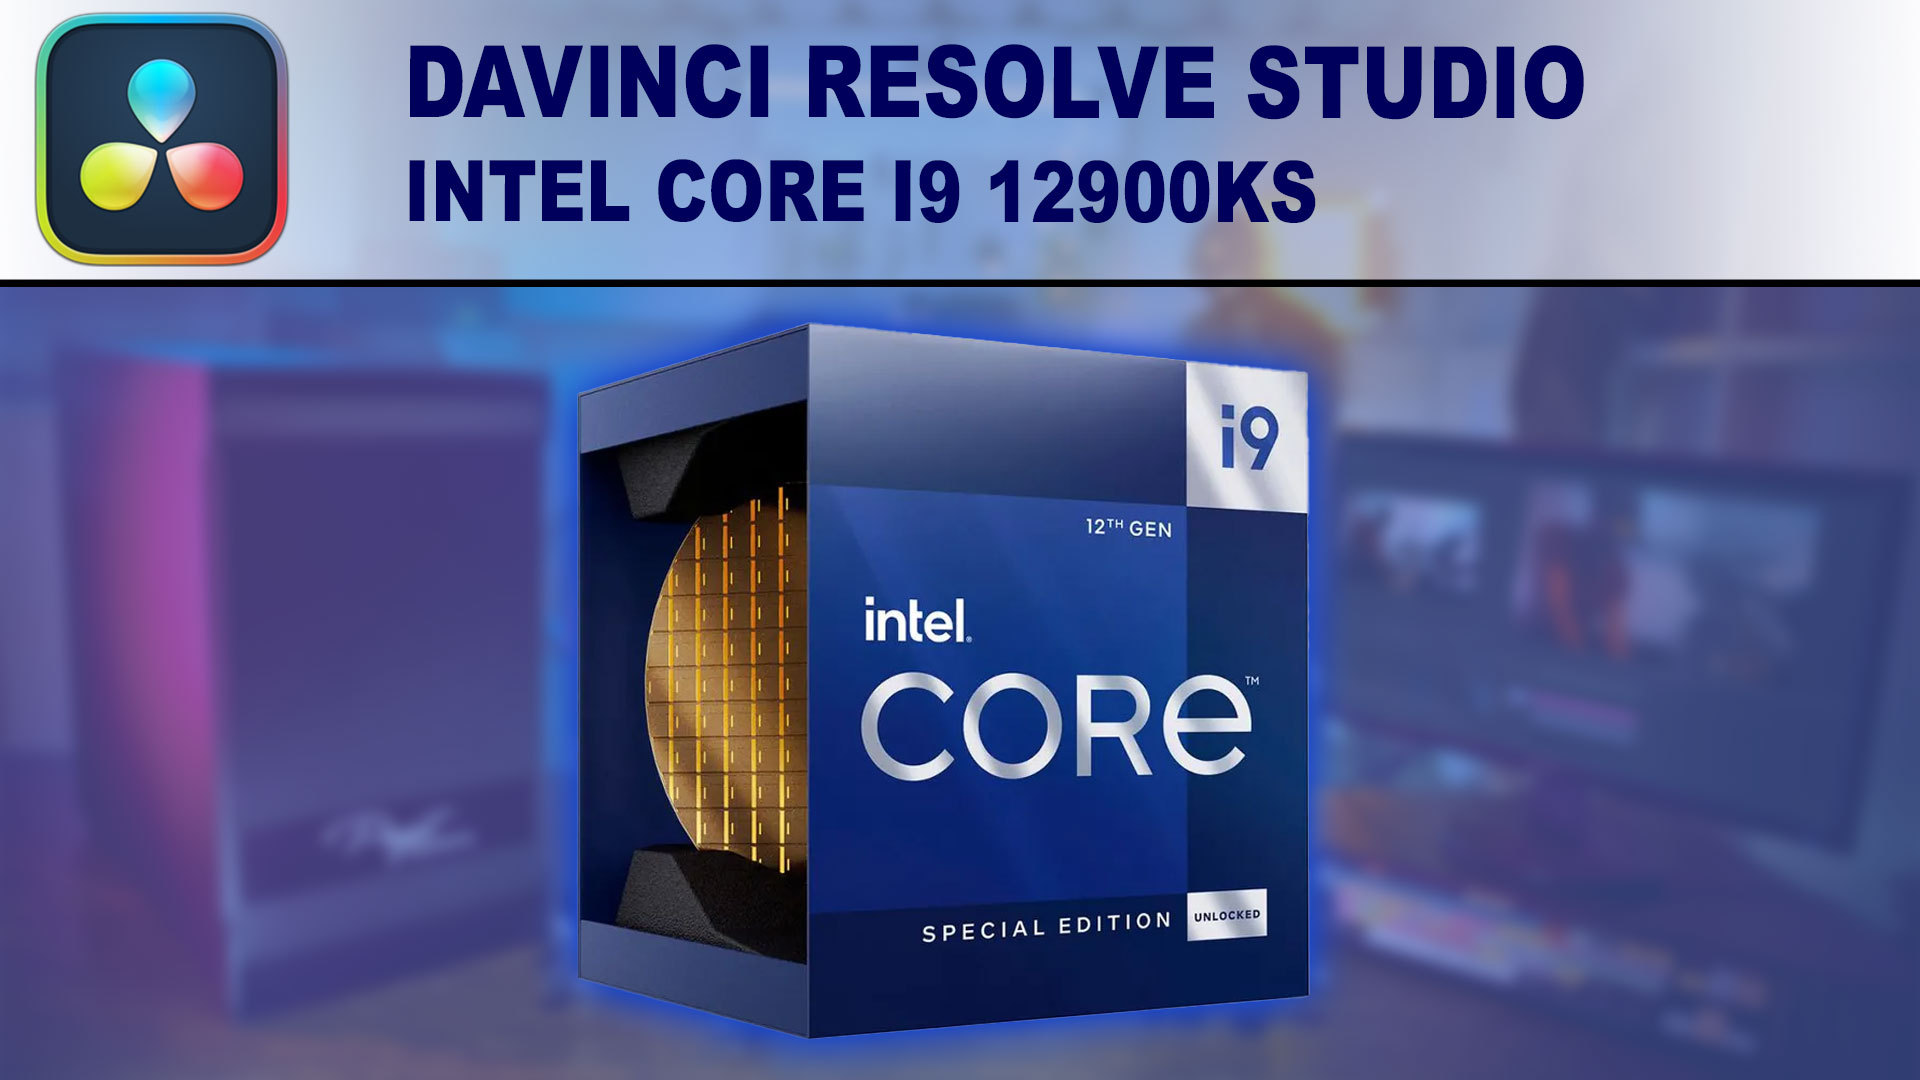 Intel Core i9 12900KS for DaVinci Resolve Studio